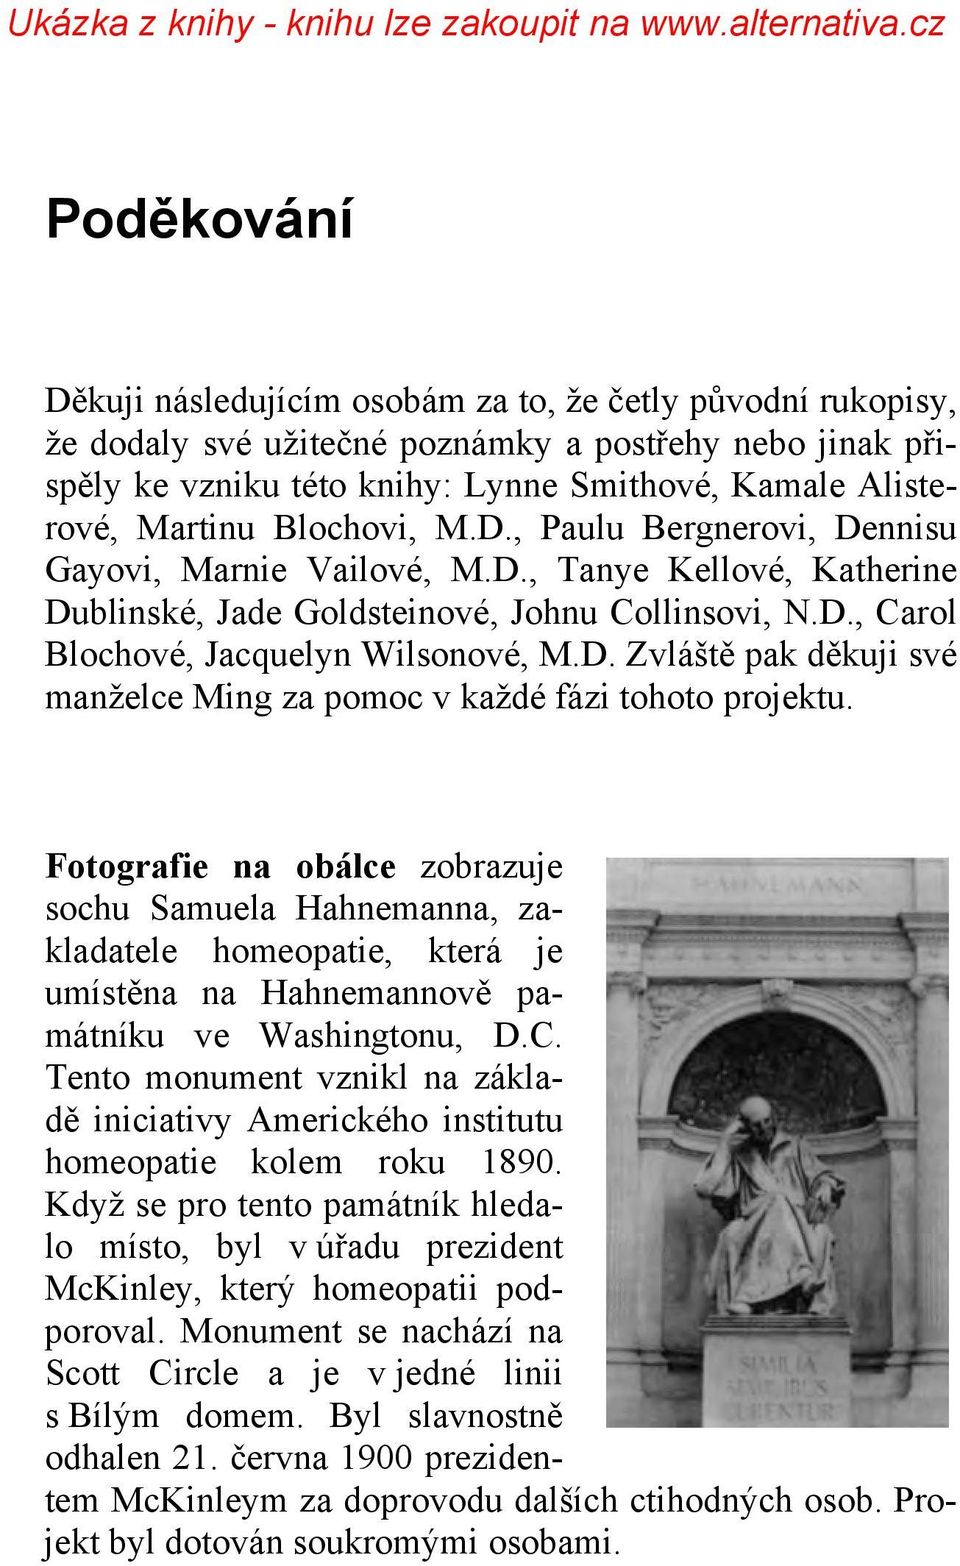 Fotografie na obálce zobrazuje sochu Samuela Hahnemanna, zakladatele homeopatie, která je umístěna na Hahnemannově památníku ve Washingtonu, D.C.